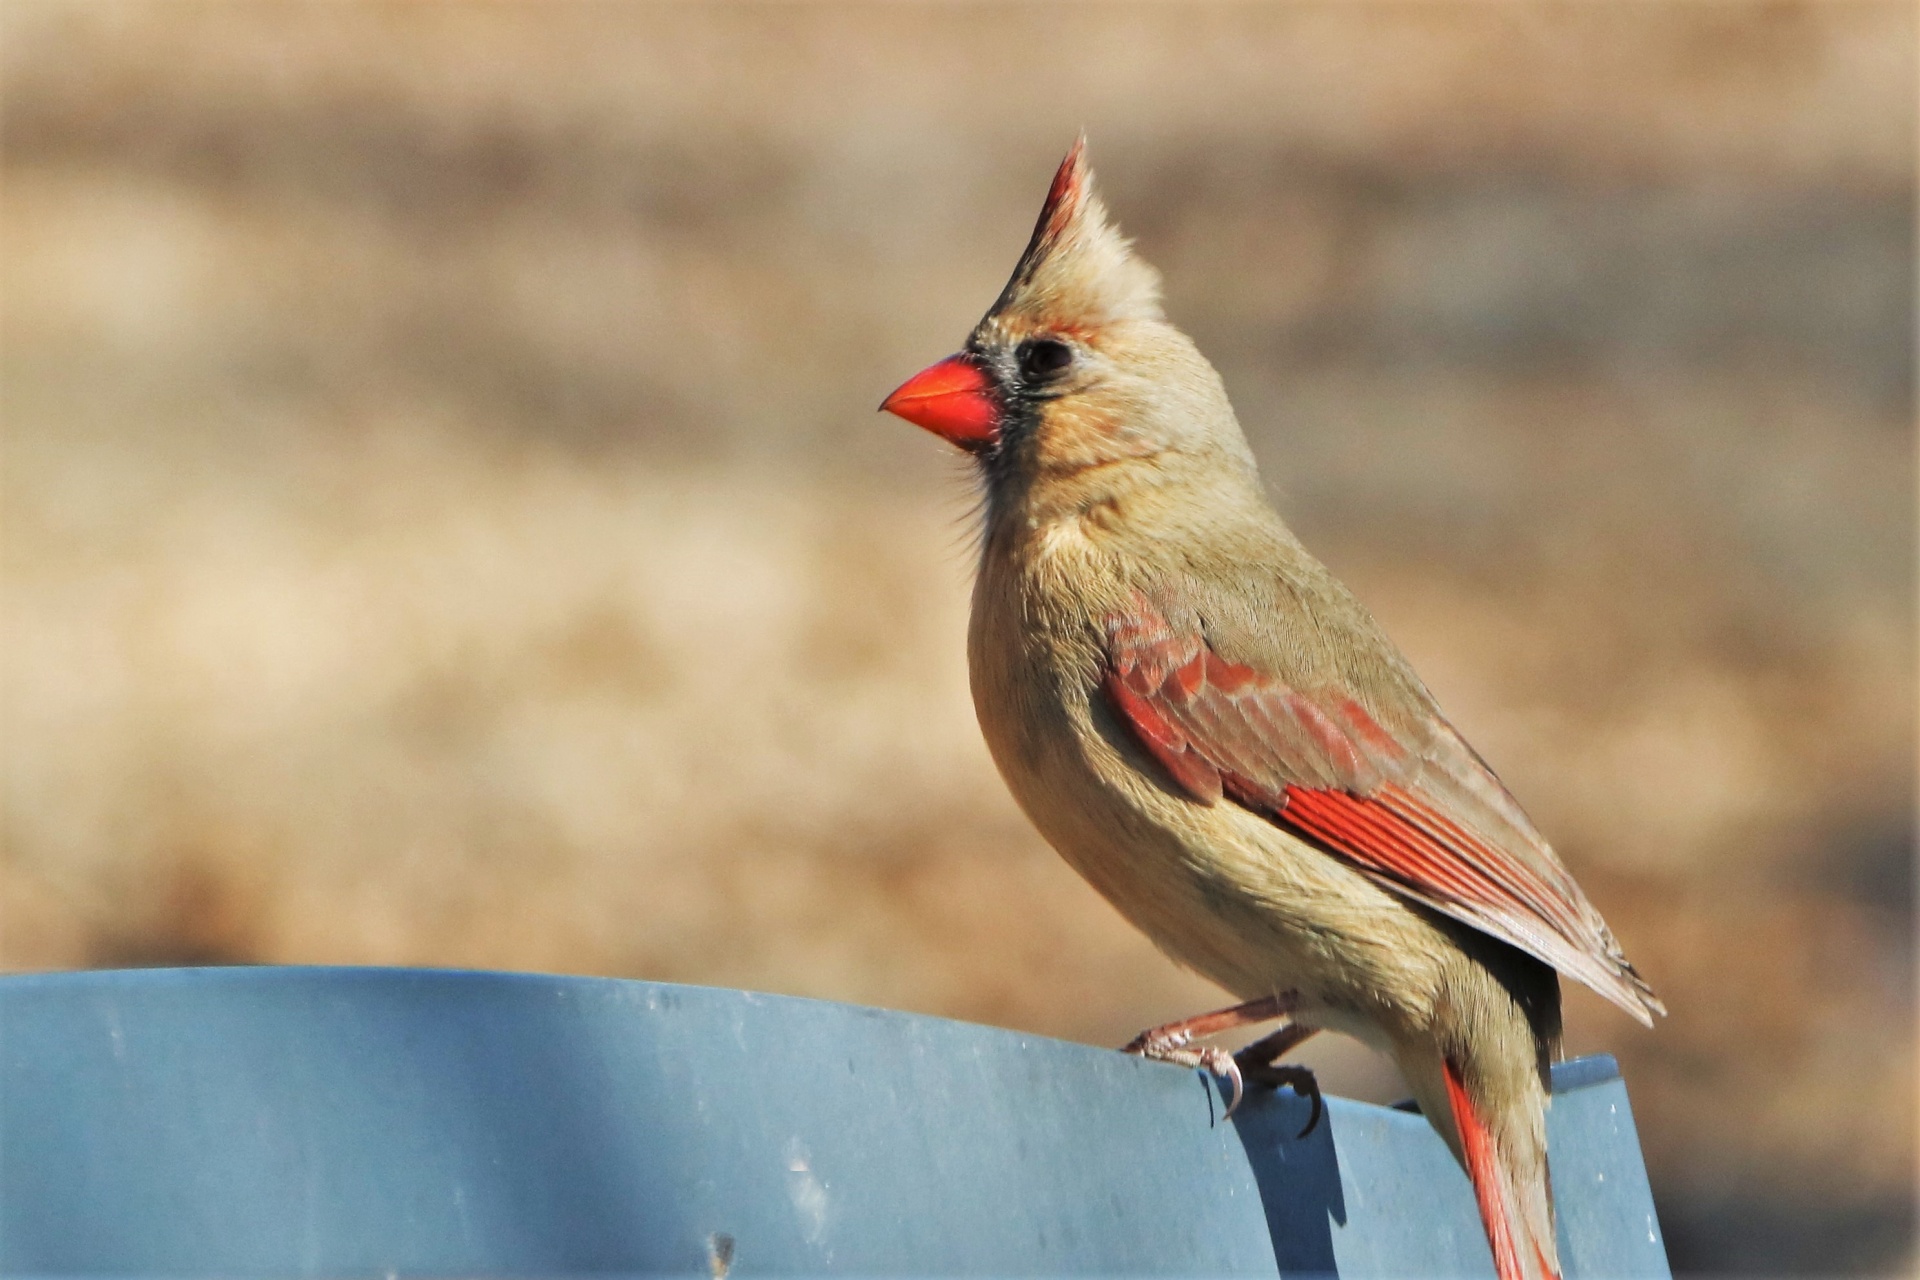 Female Cardinal Bird Close-up